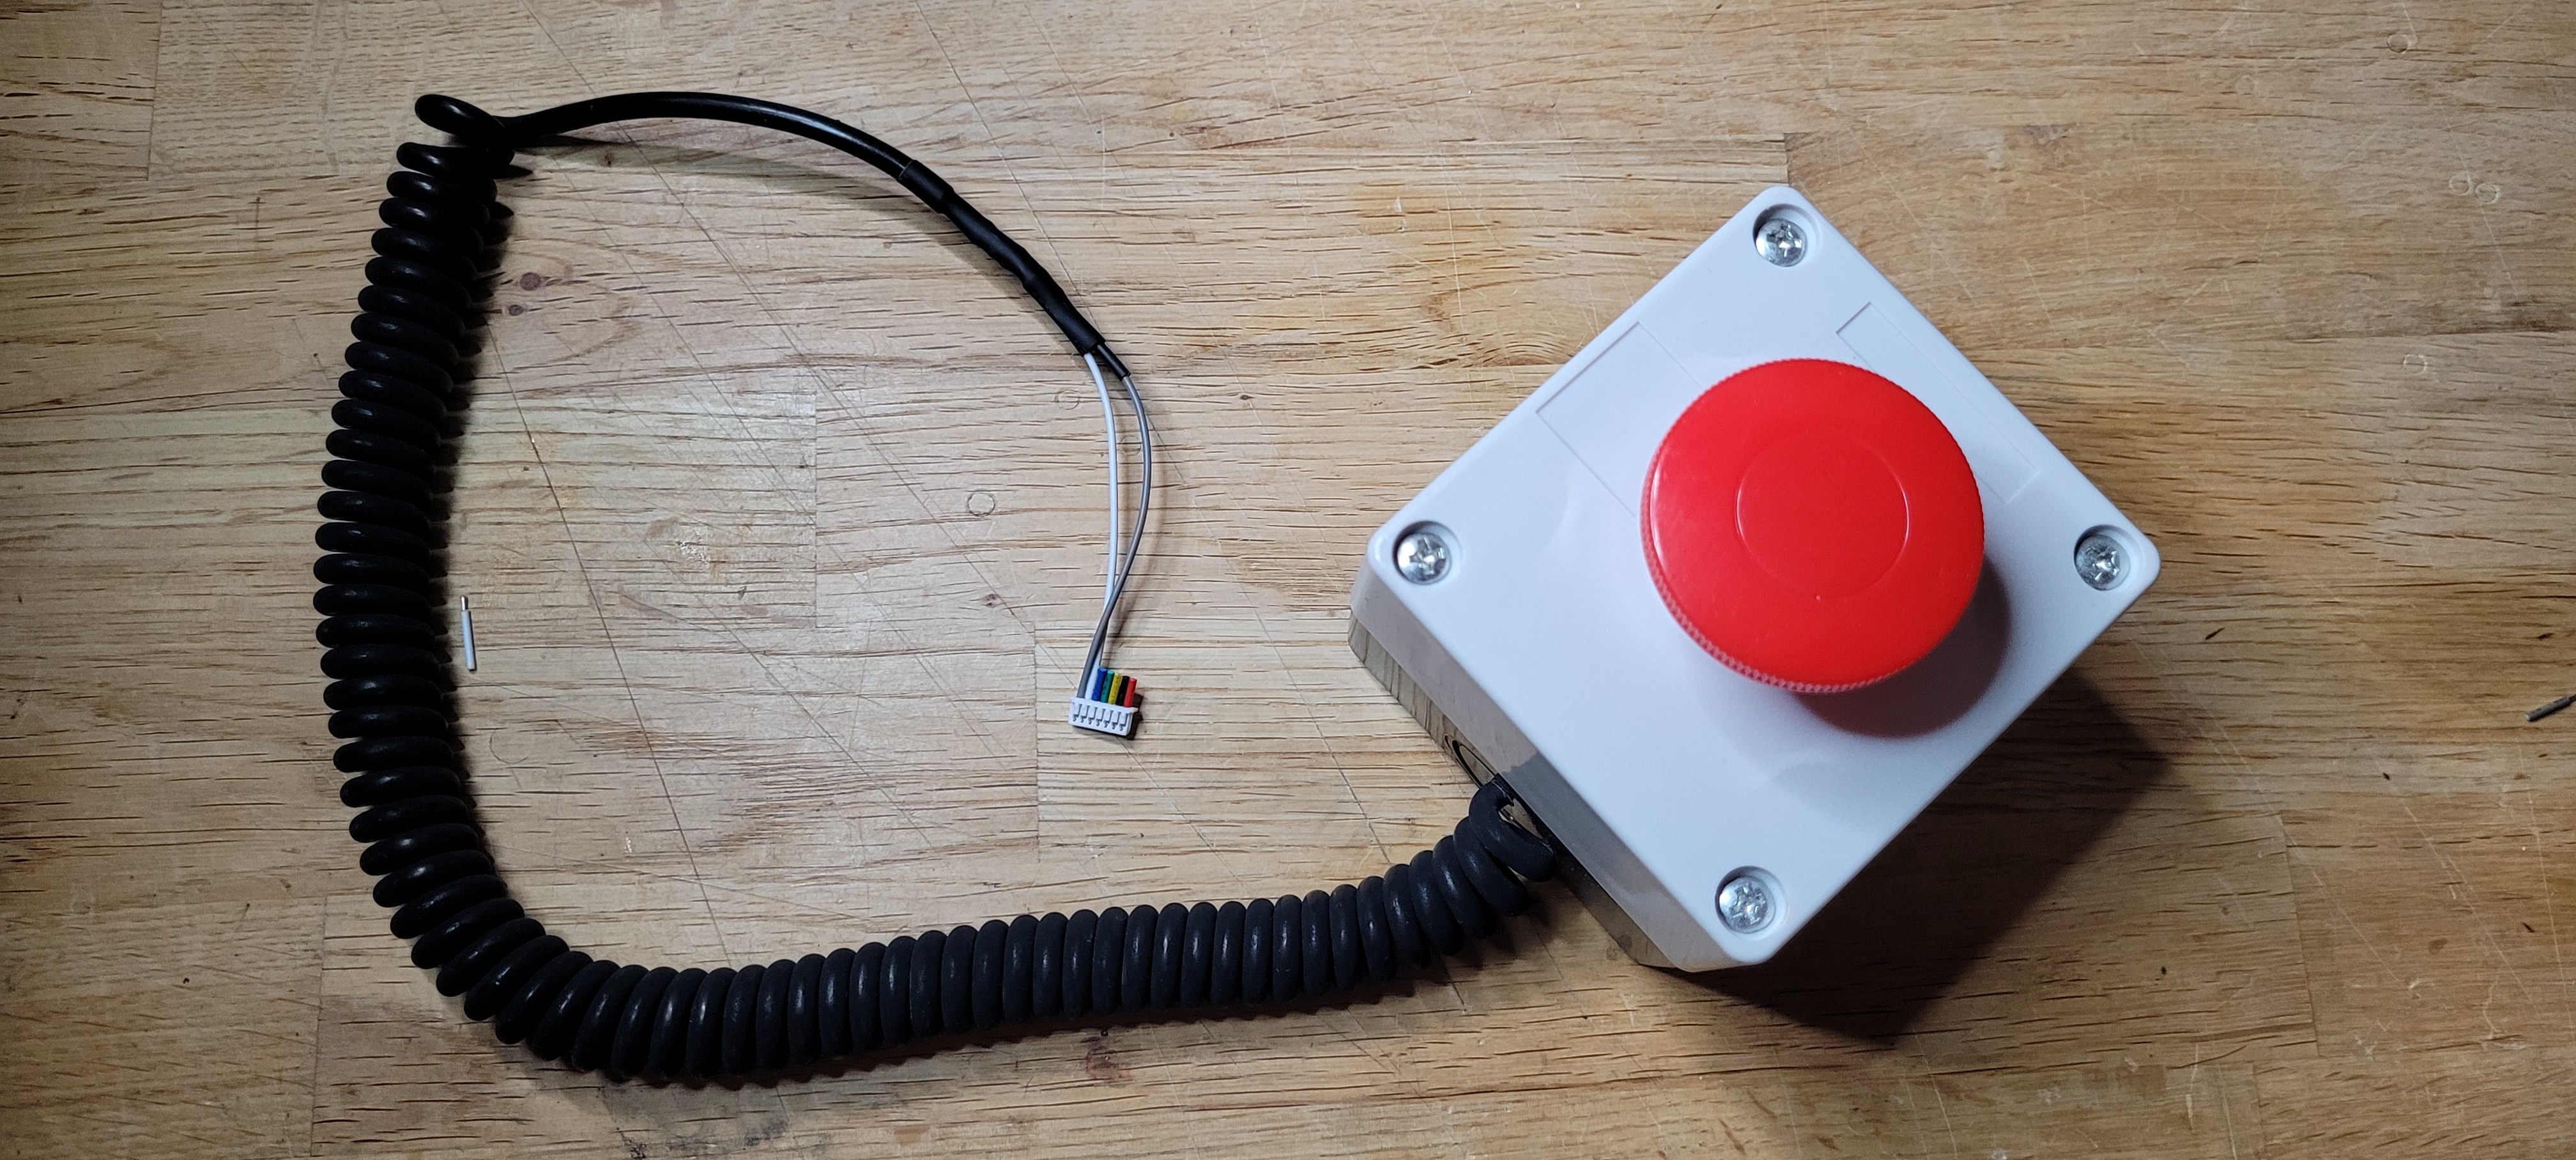 WT32-SC01 Plus DIY Boot Button Cable